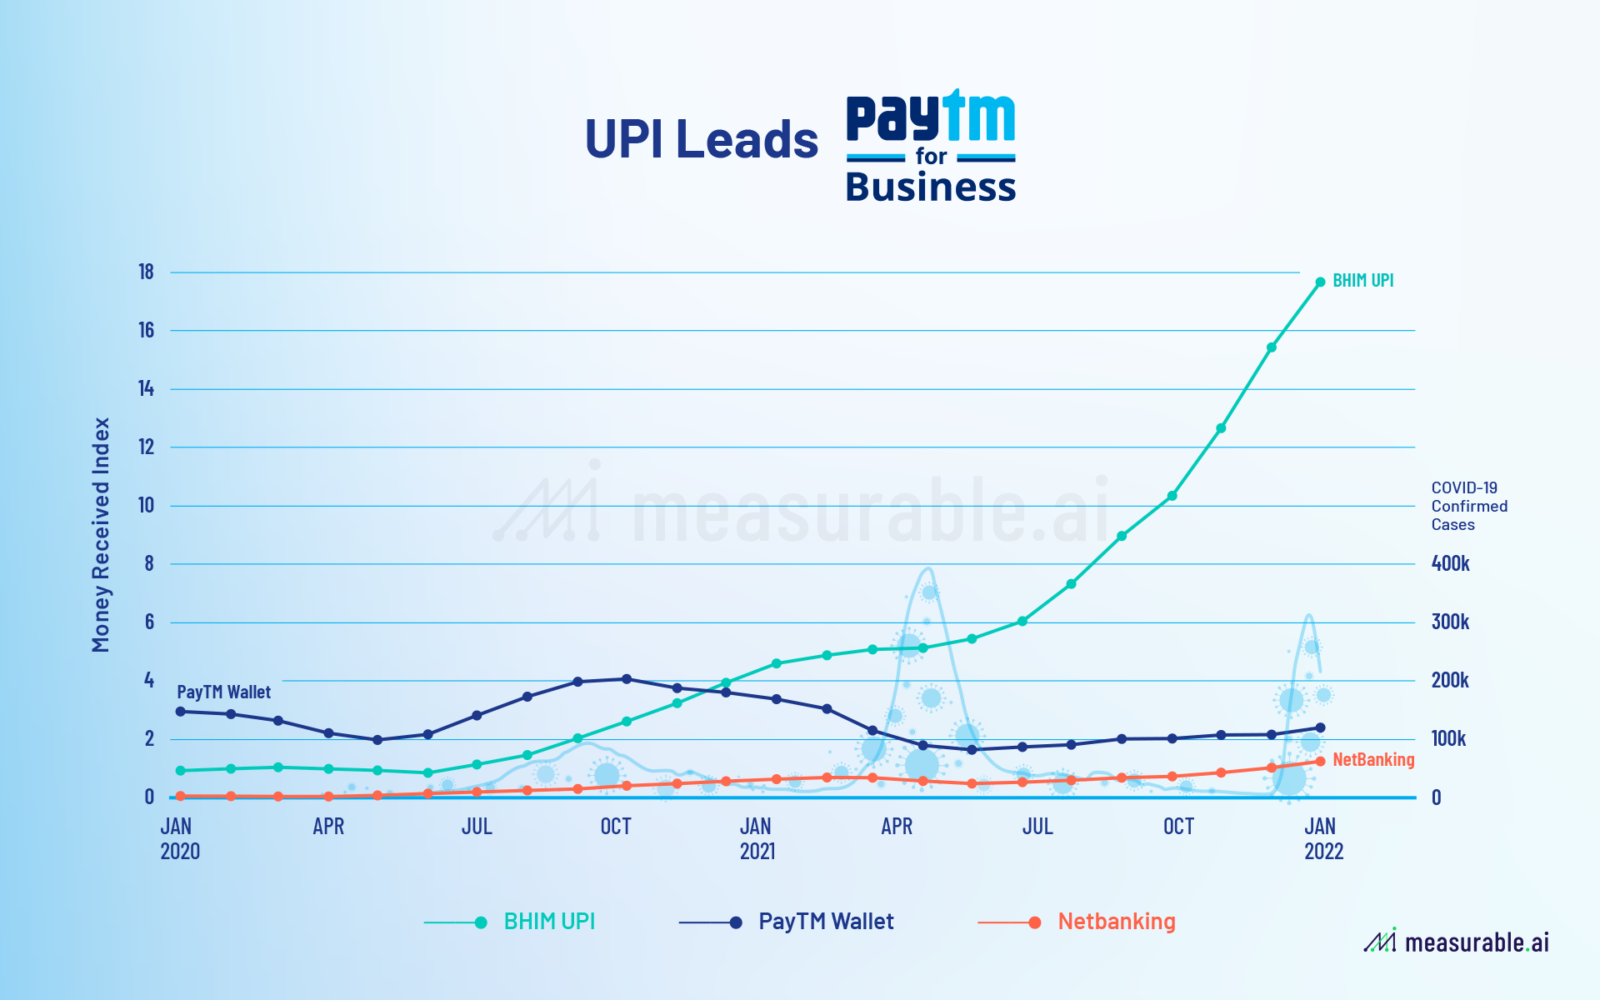 UPI Leads PayTM